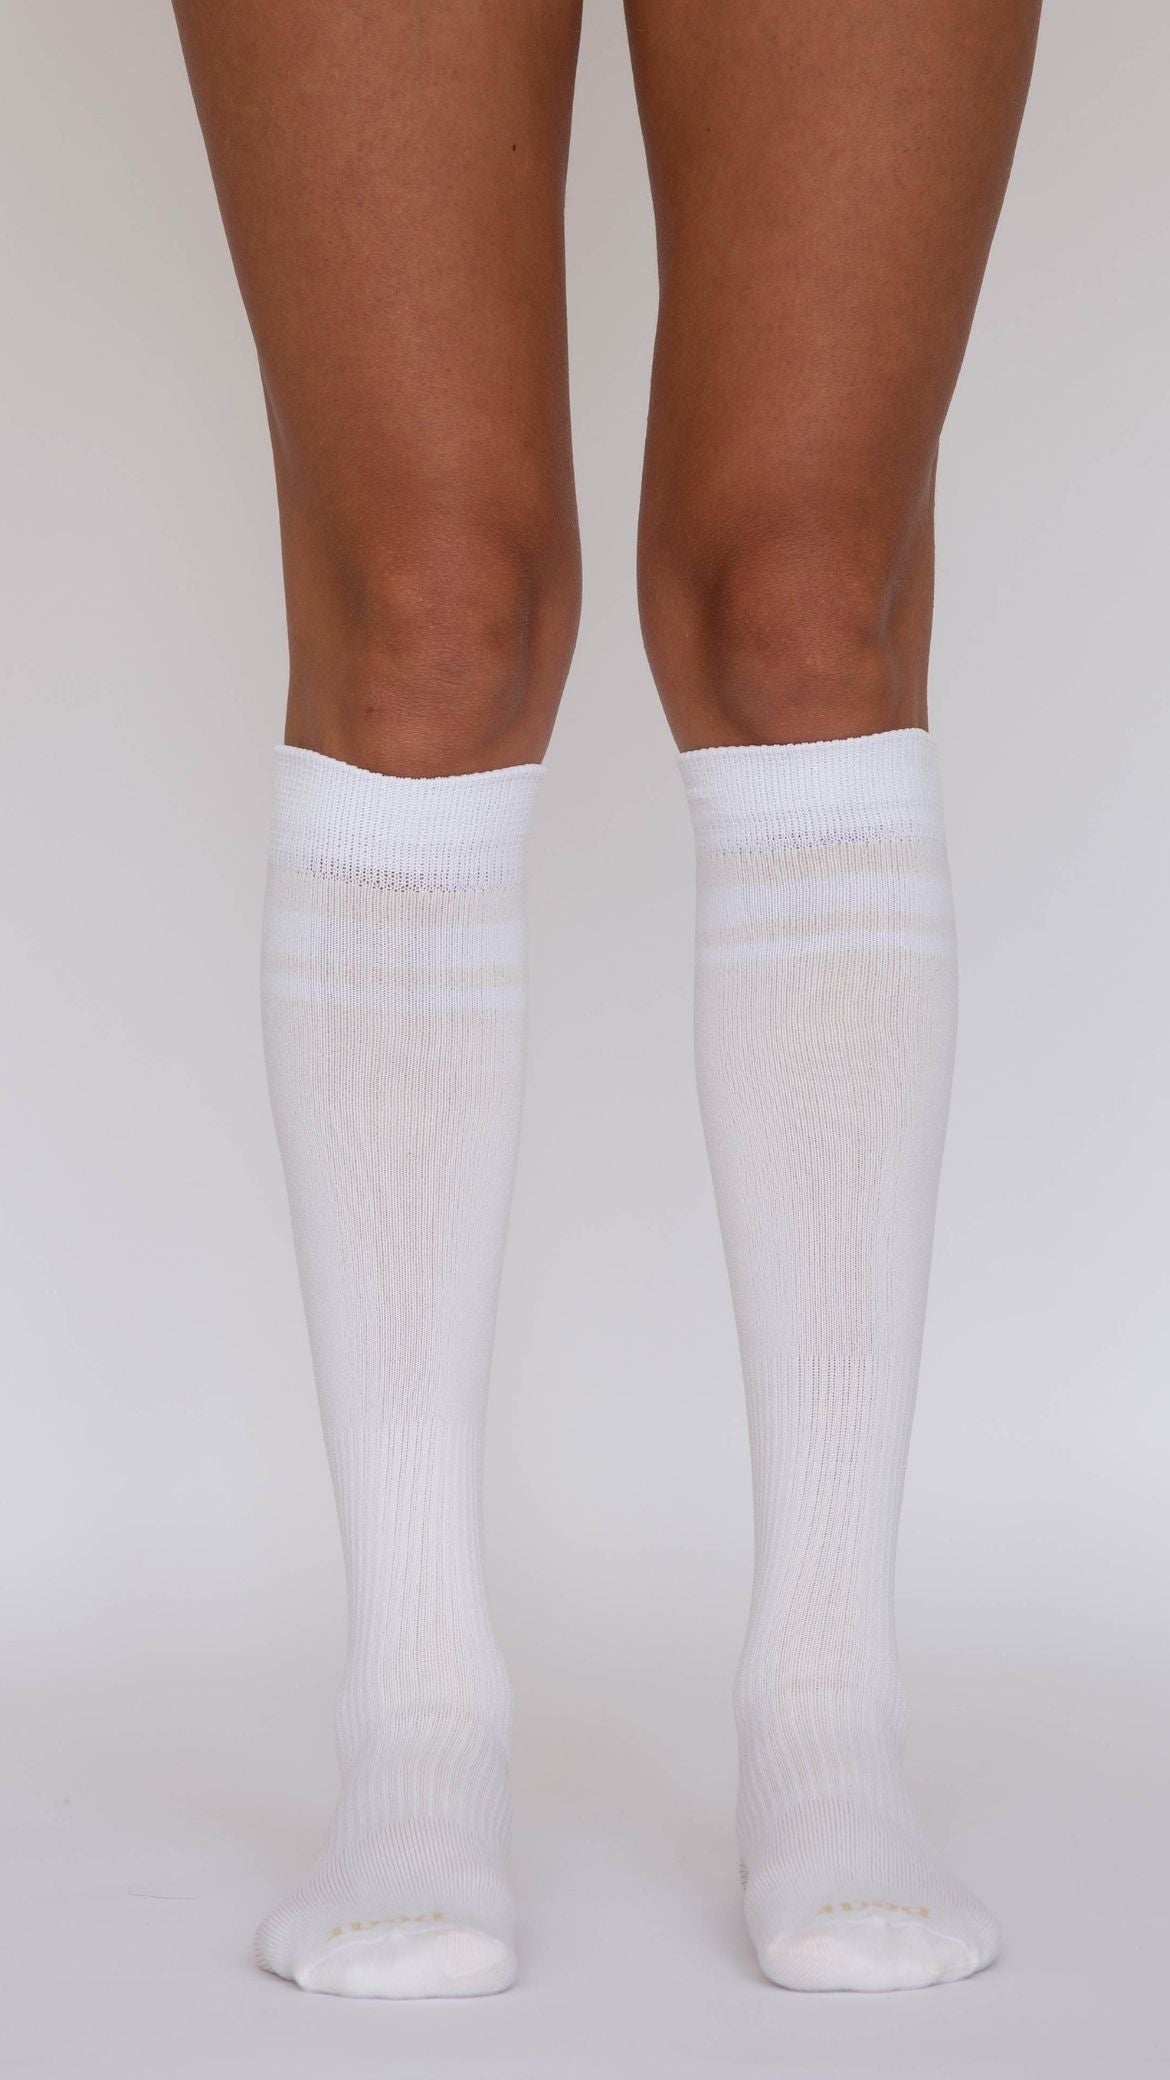 Zip Up Compression Socks High Leg Support Knee Senegal